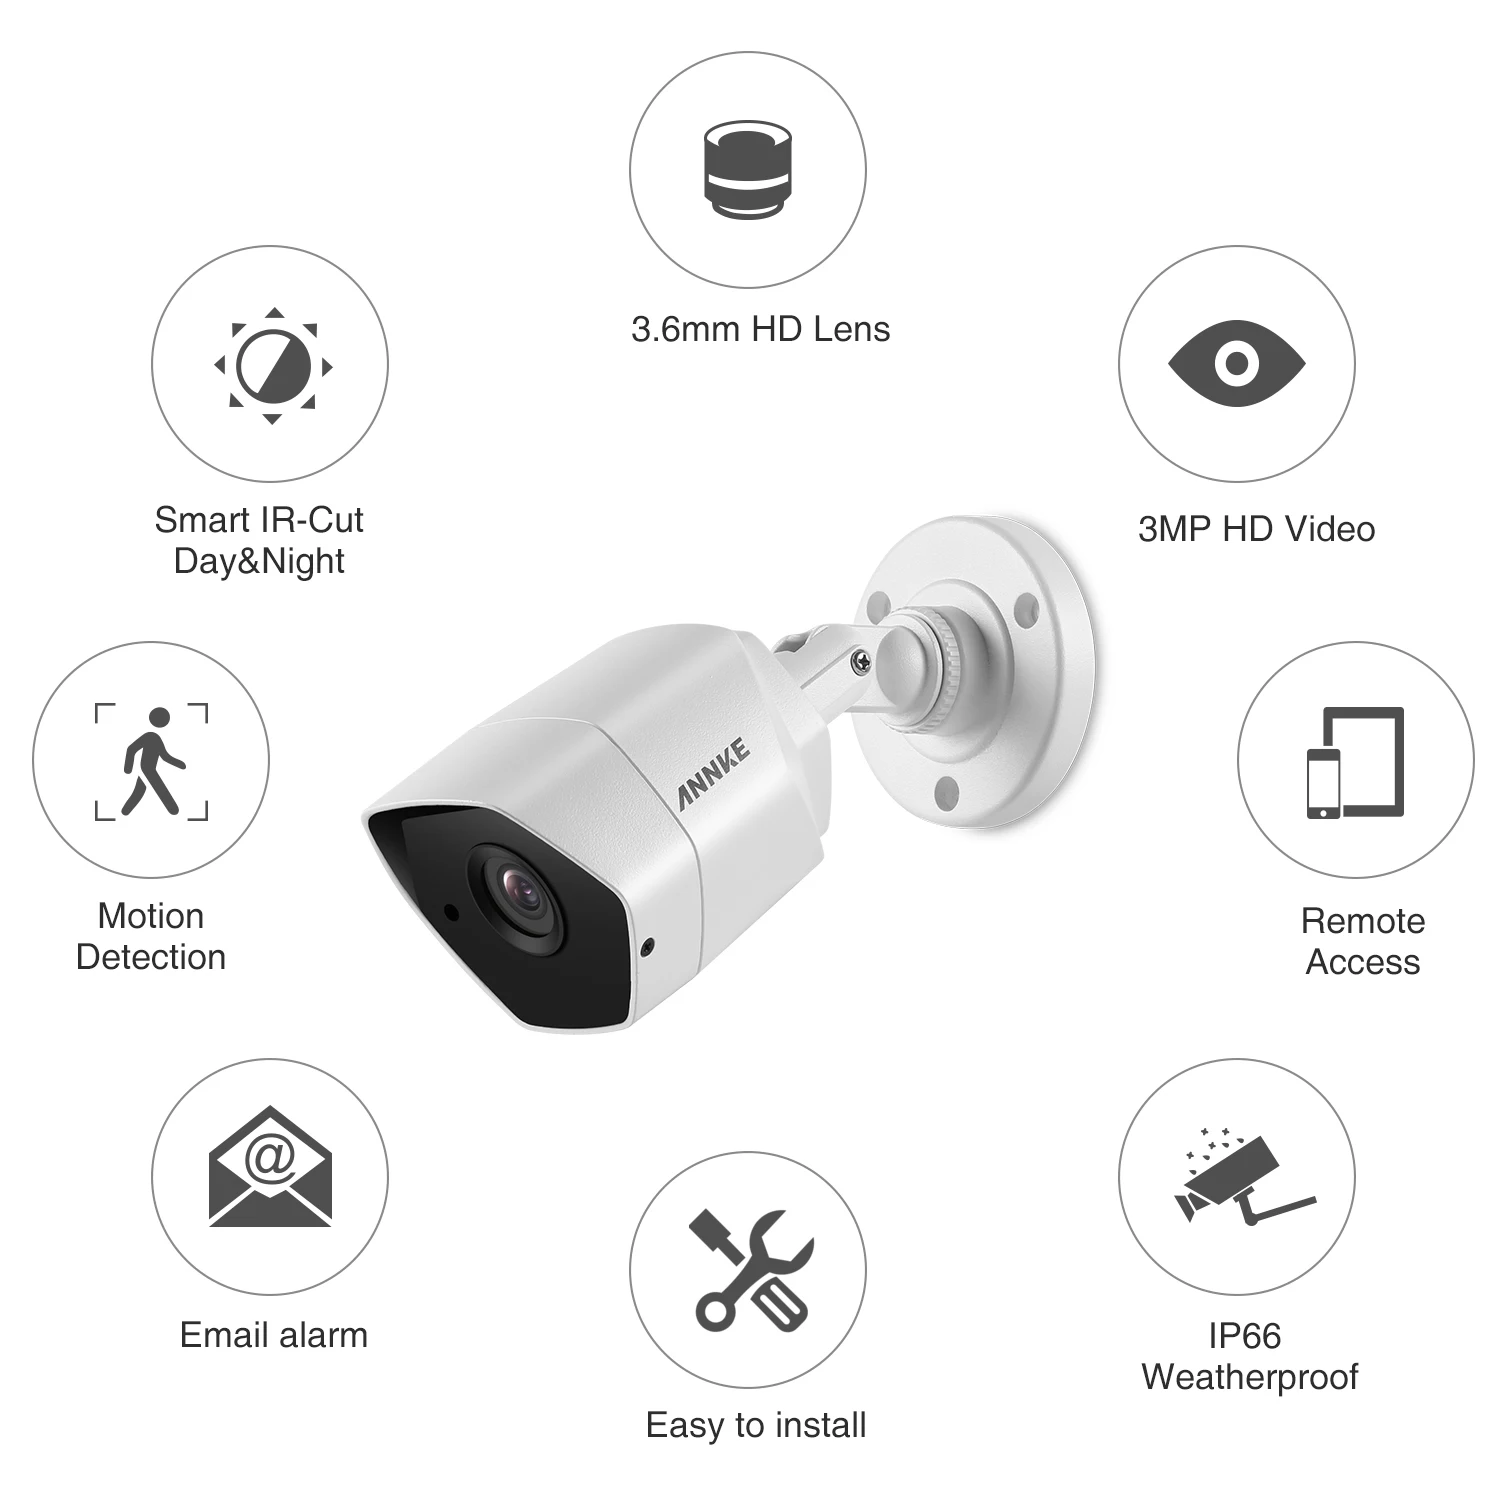 ANNKE 3MP HD-TVI камера безопасности 4 шт. пули комплект открытый металлический водонепроницаемый корпус Супер ночного видения система наблюдения